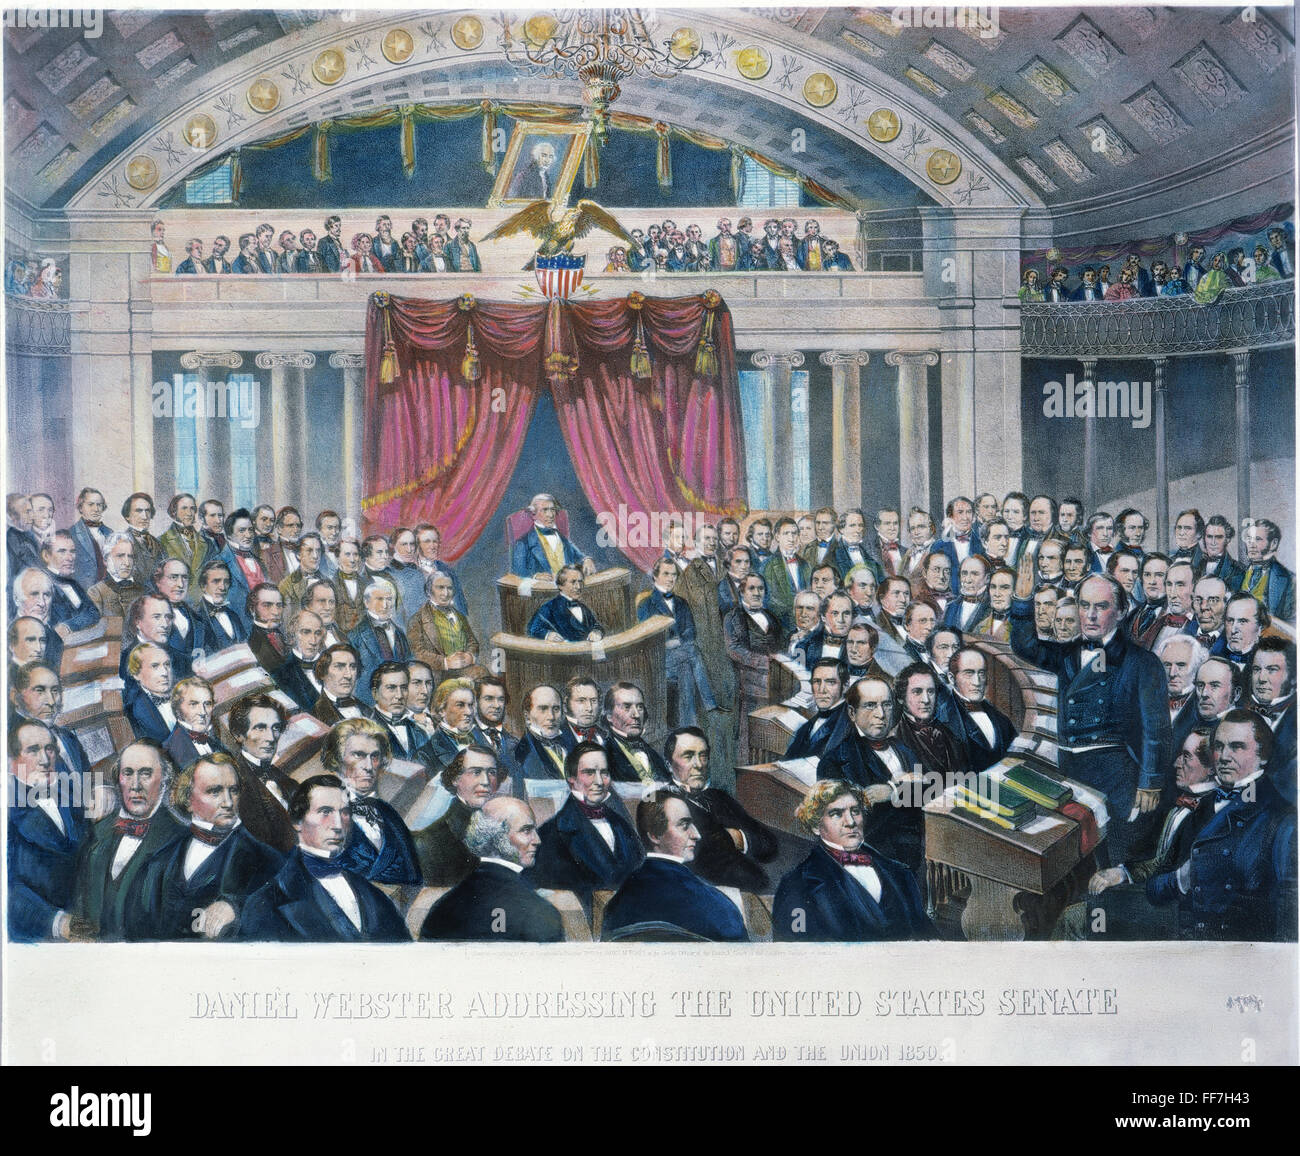 DANIEL WEBSTER (1782-1852). /NAmerican avvocato e statista. Rivolgendosi al Senato degli Stati Uniti nel grande dibattito sulla costituzione e l'Unione europea, 1850. American litografia, 1860. Foto Stock